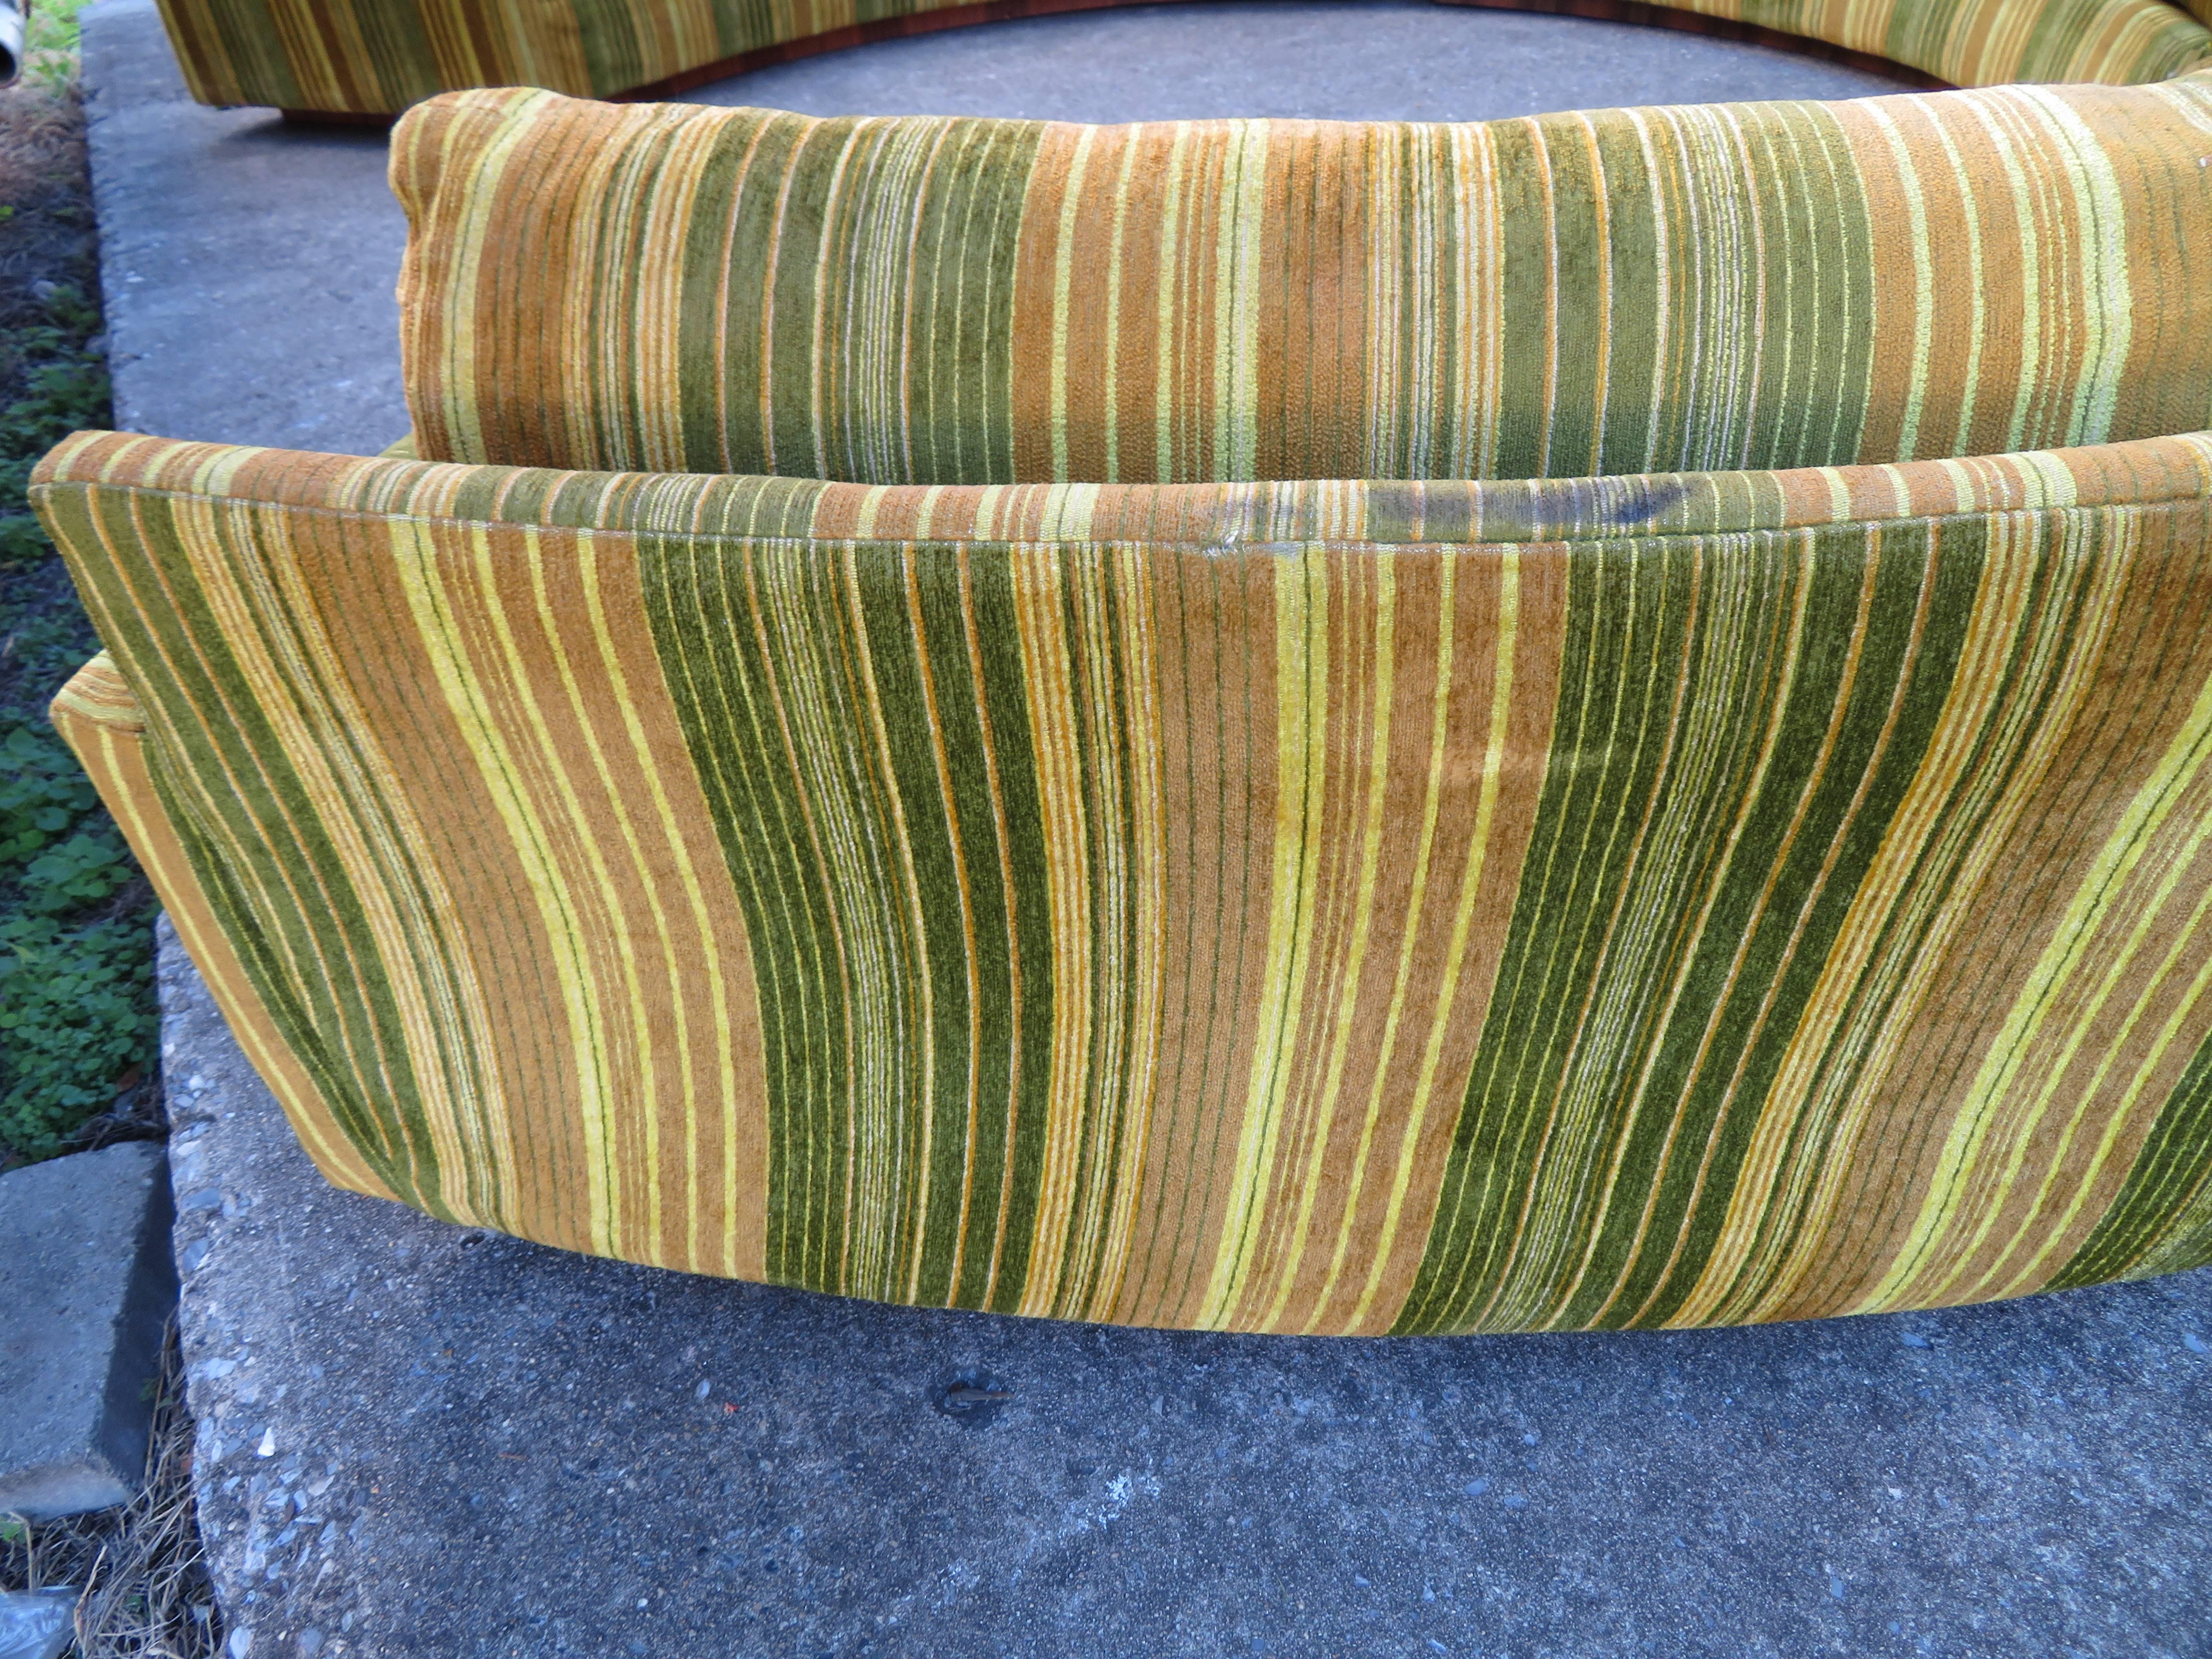 Upholstery Spectacular Three-Piece Milo Baughman Circular Sofa Rosewood Mid-Century Modern